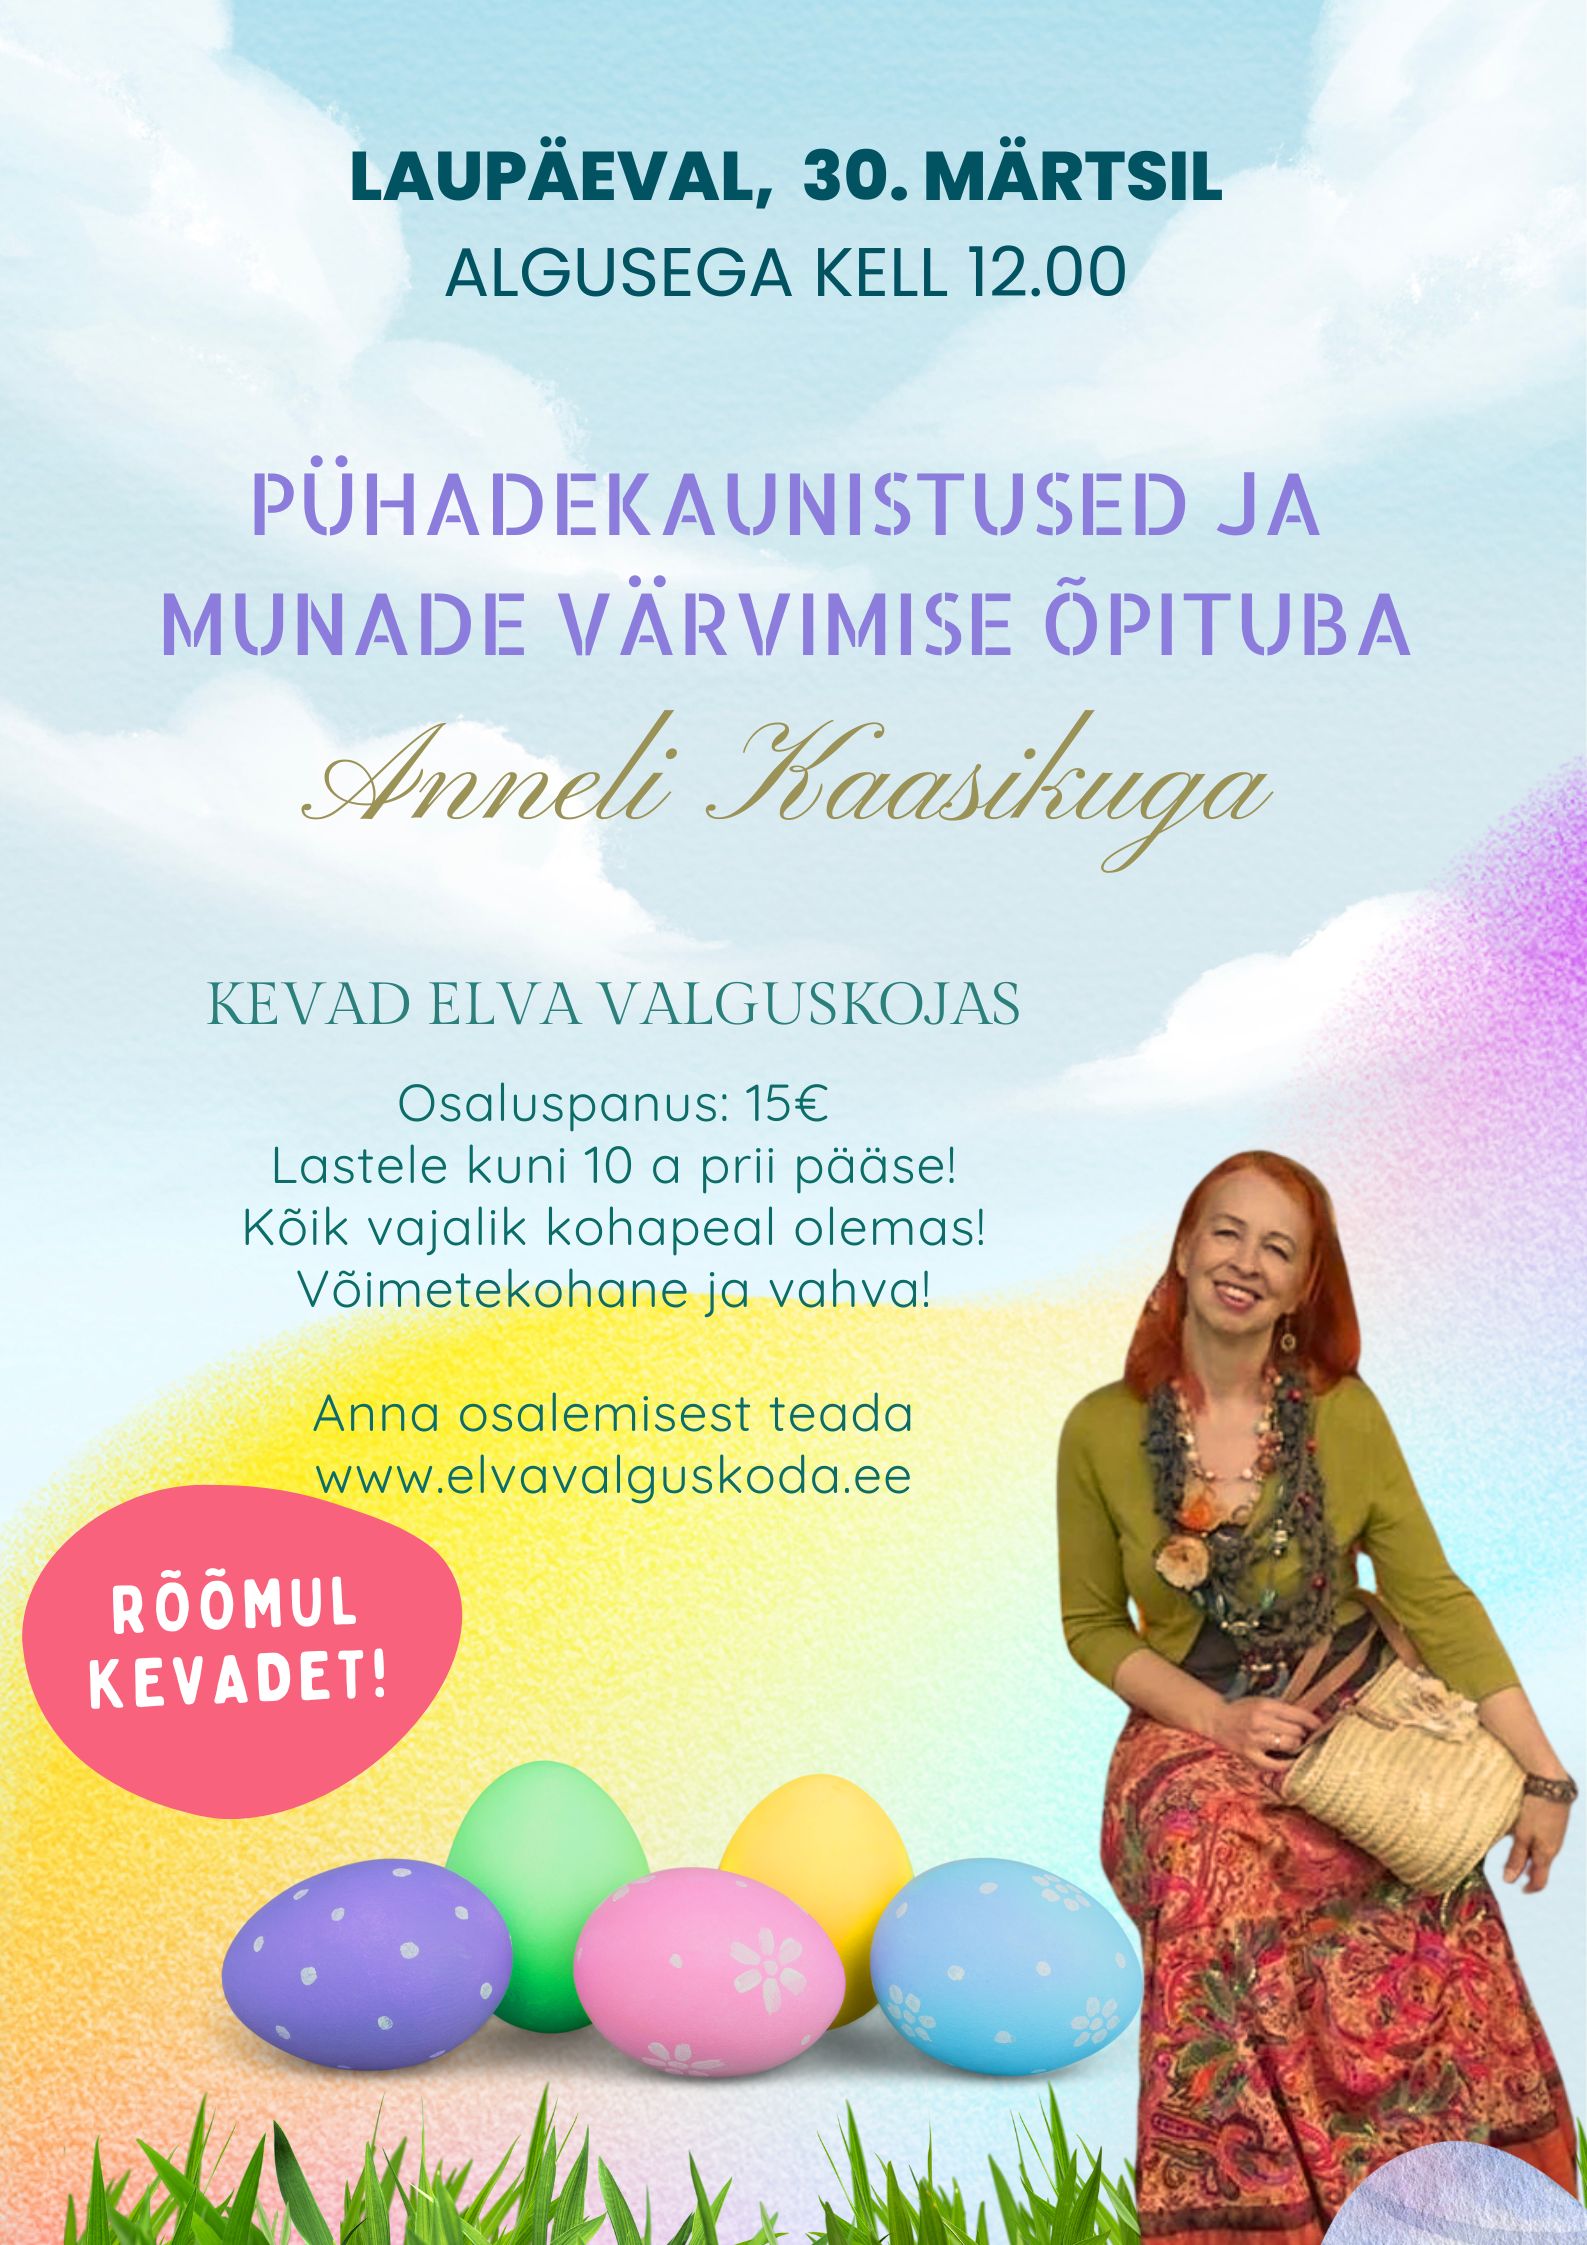 Munade värvimise töötuba Anneli Kaasikuga Elva Valguskojas 30. märtsil kell 12.00